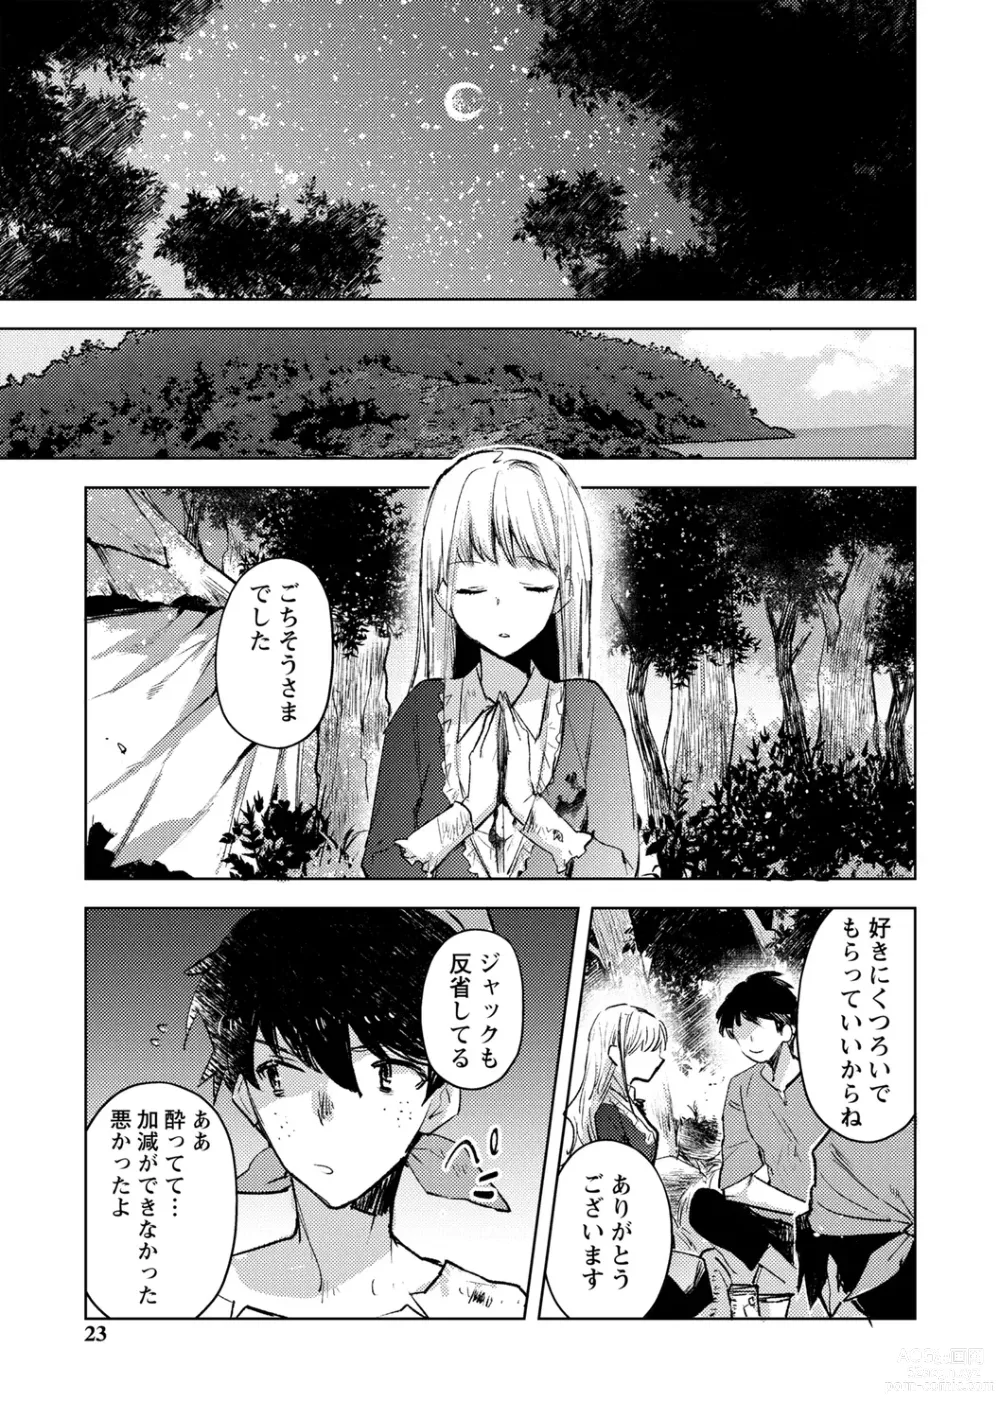 Page 23 of manga Bad endroll